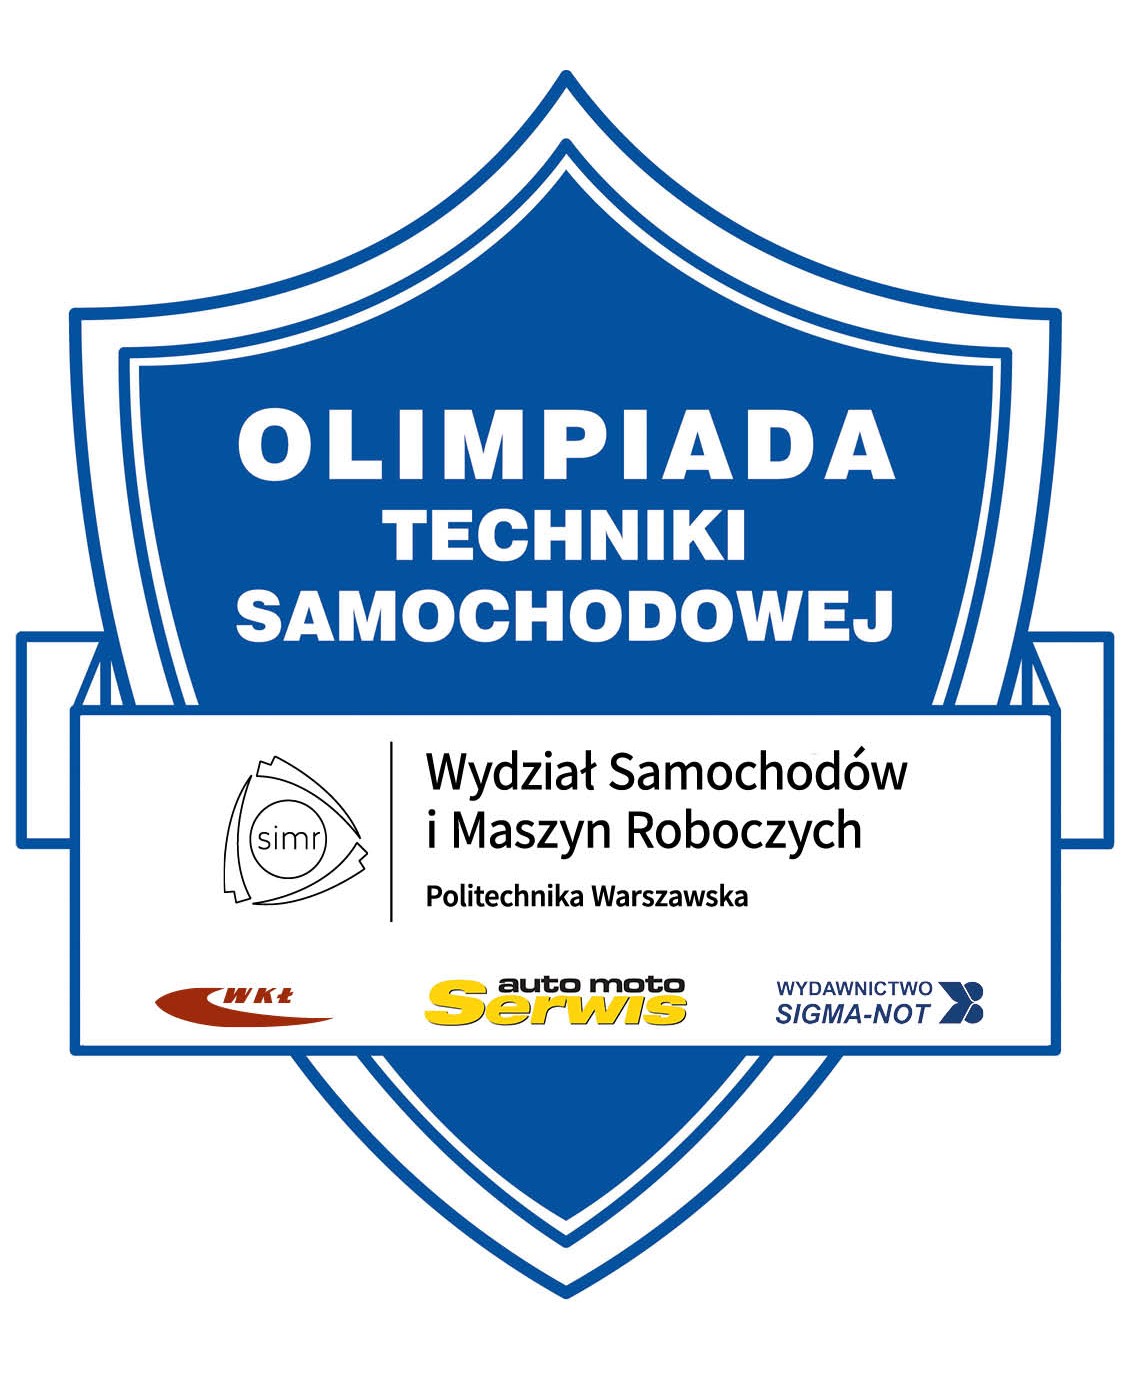 Olimpiada Techniki Samochodowej OTS